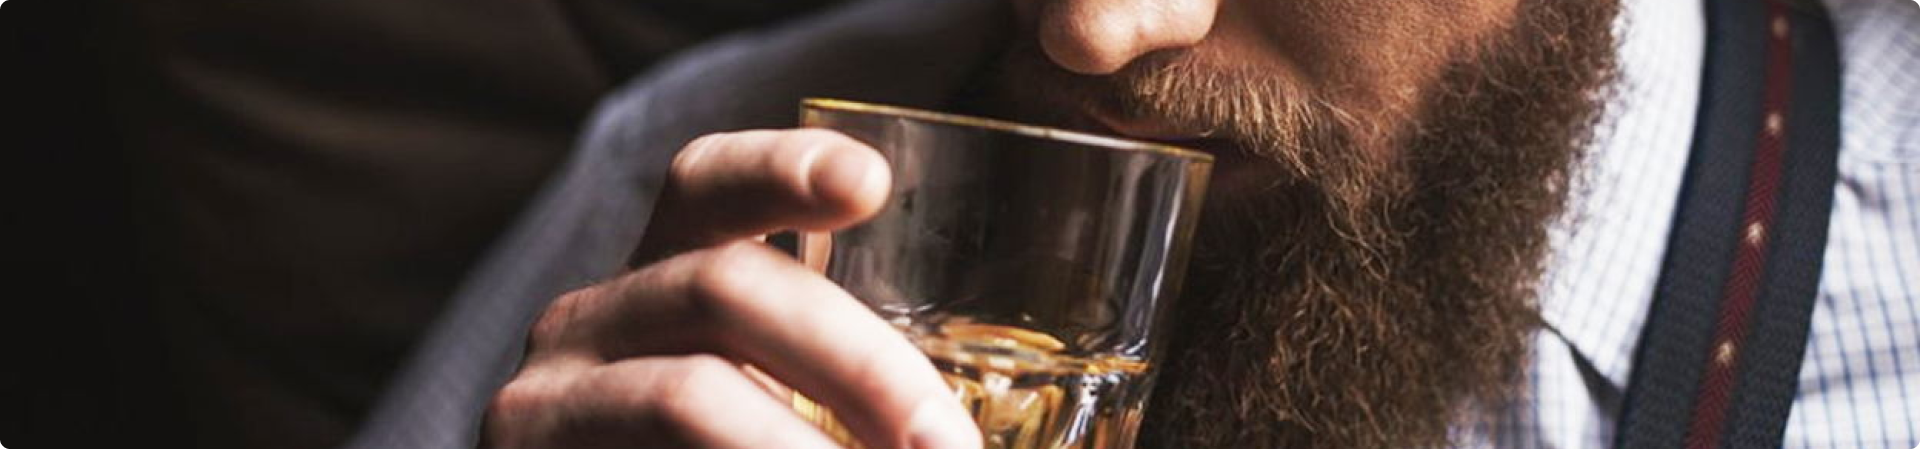 23 февраля в кластере «Октава»: дегустация виски для настоящих мужчин